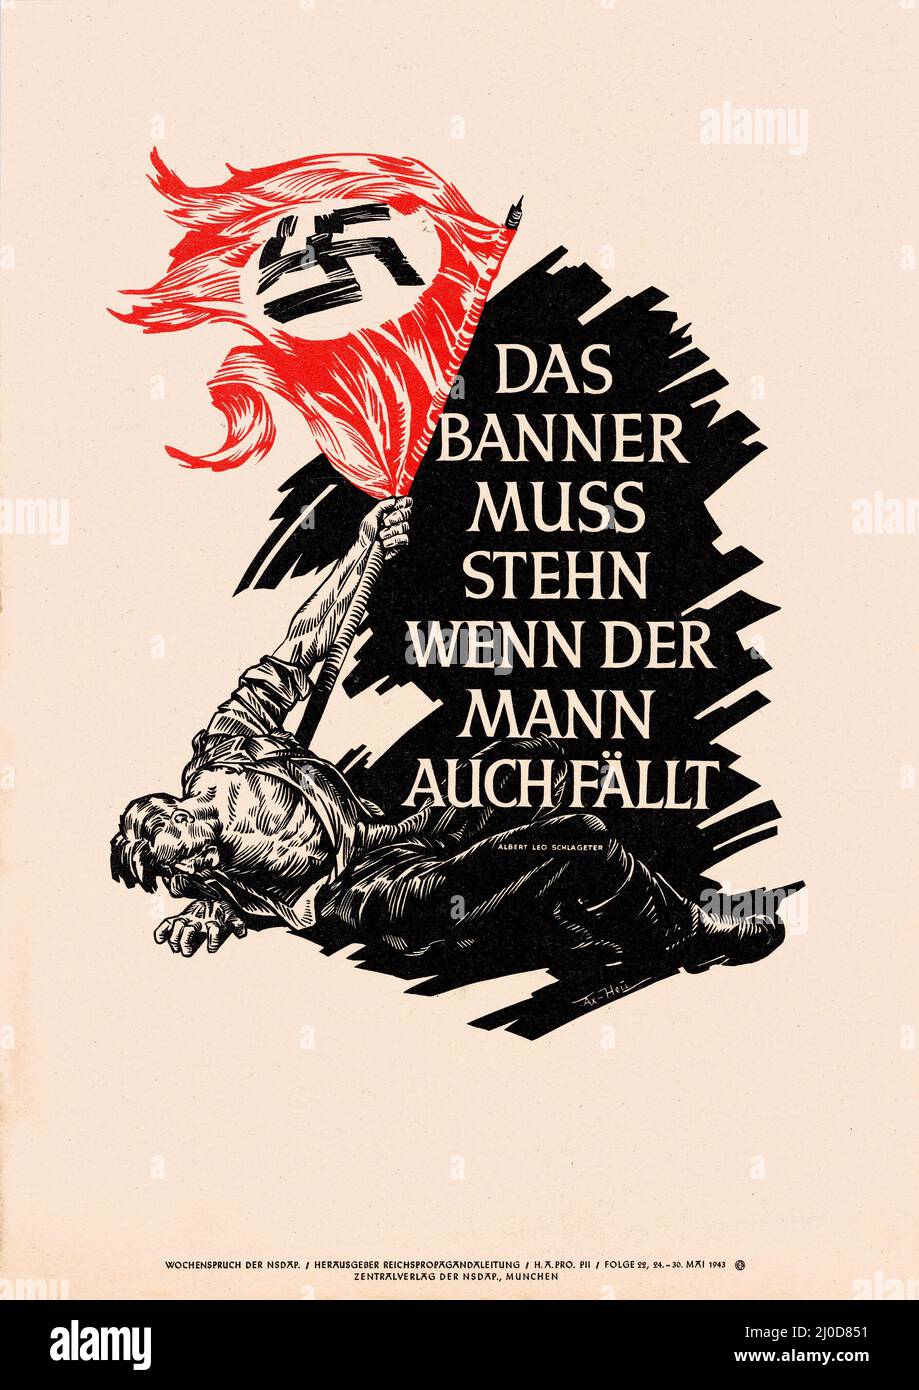 Deutsche Nazi-Propaganda - das Banner muss stehen, auch wenn der Mann fällt – Albert Leo Schlageter 1943. Stockfoto